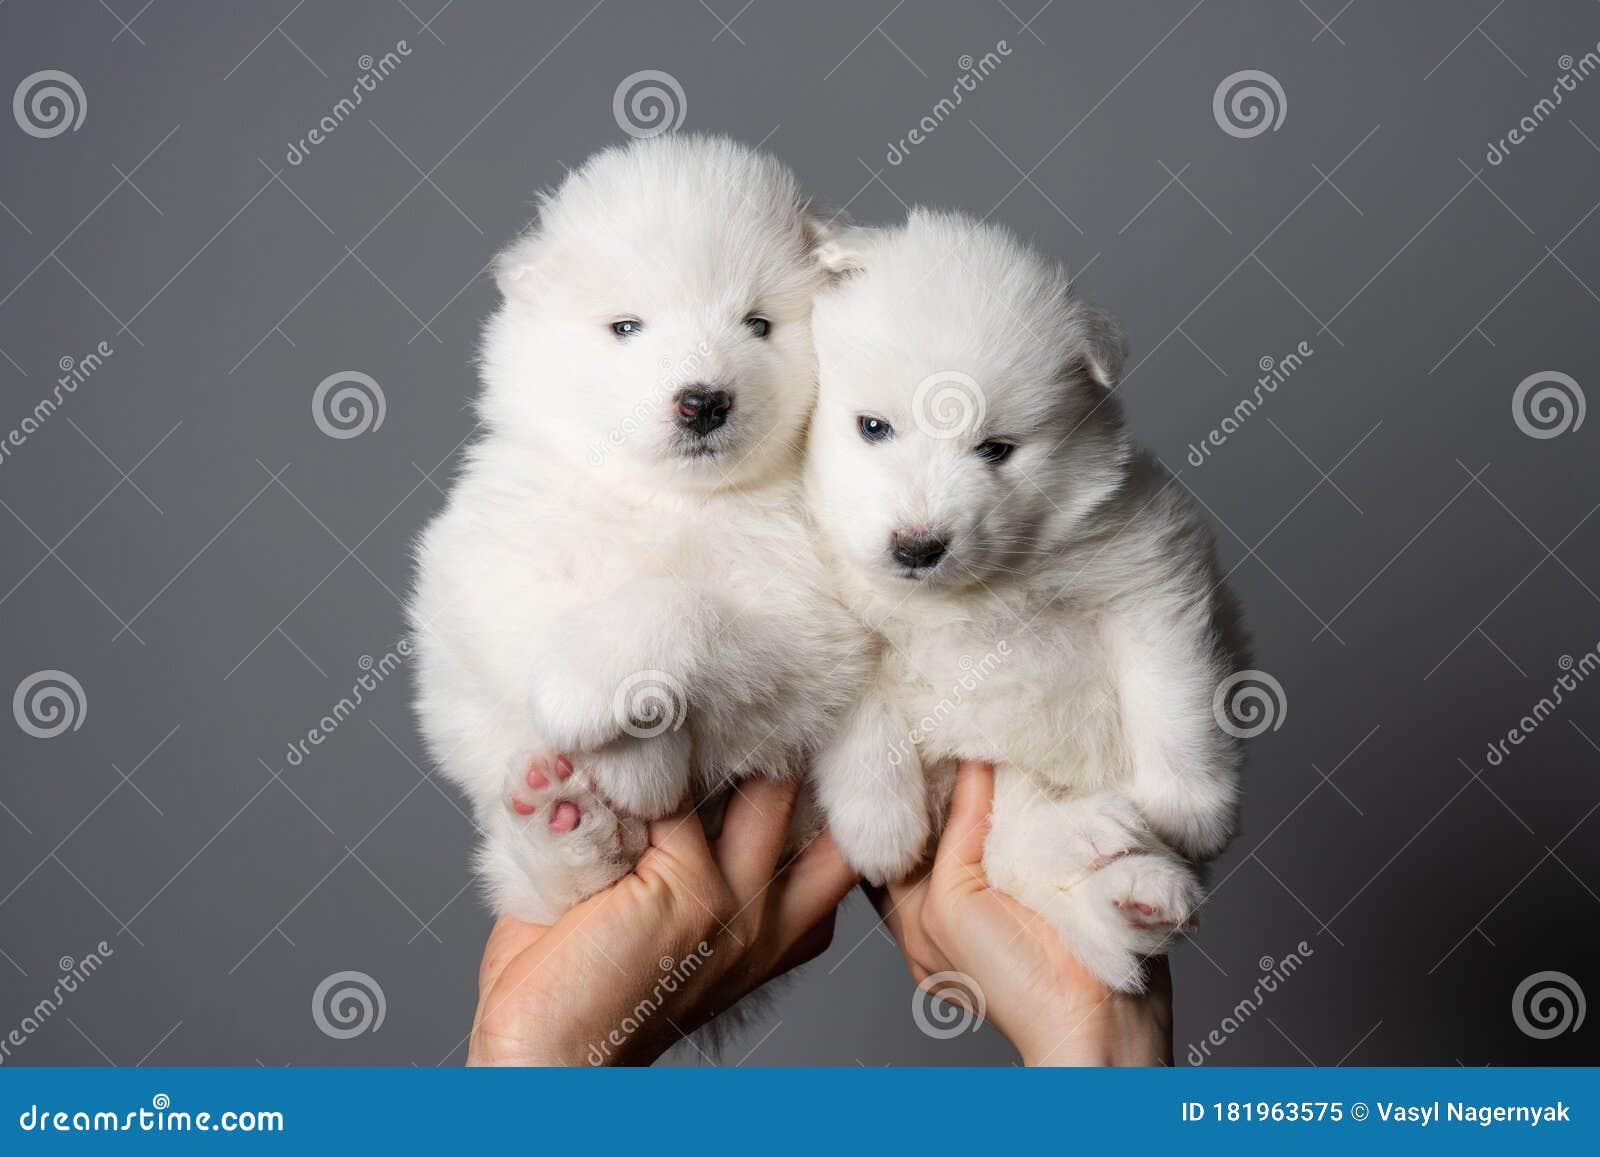 Chào mừng đến với thế giới các chú chó Samoyed cưng của chúng tôi! Hãy nhìn vào hình ảnh này để được chứng kiến sự đáng yêu và đầy năng lượng của các chú chó nhỏ. Khăm phá các chú chó Samoyed con của chúng tôi, được sự yêu thương và chăm sóc hoàn hảo từ chúng tôi.